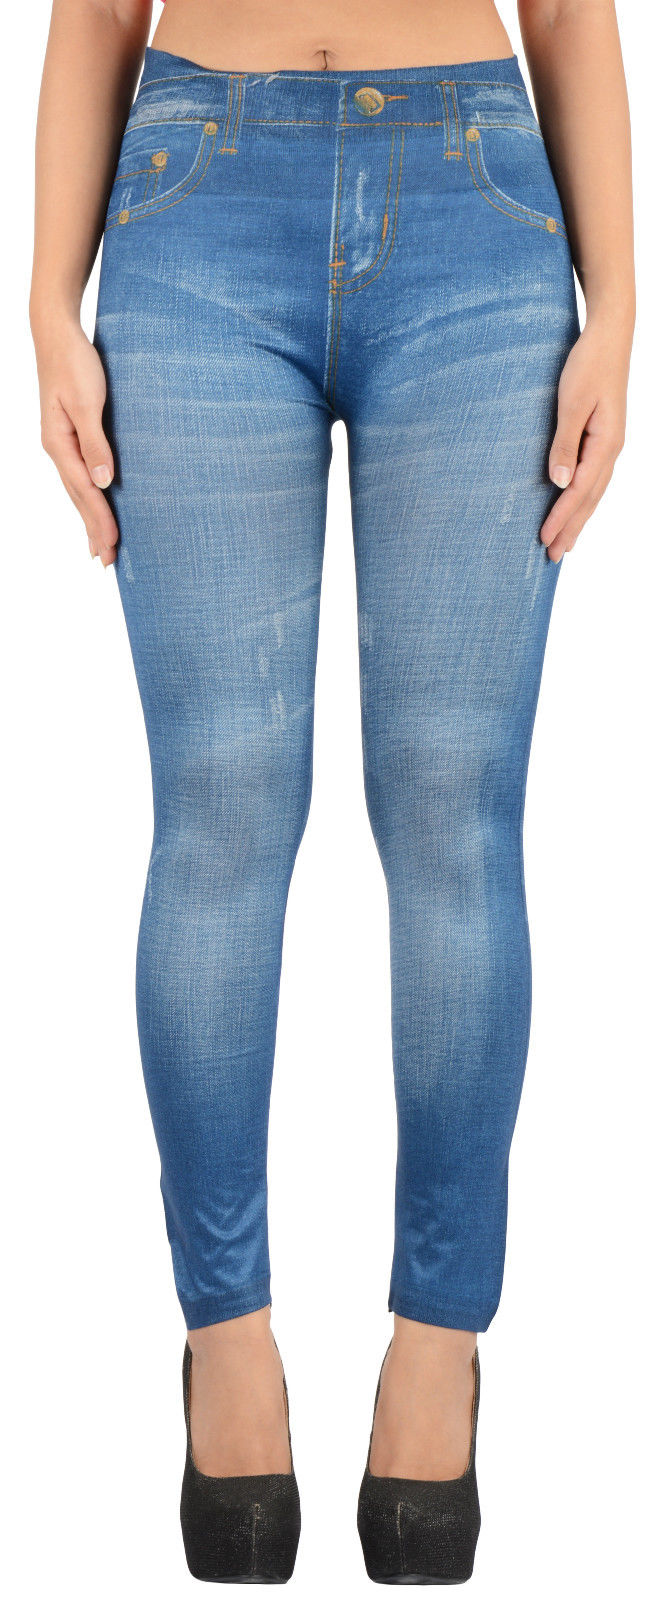 Buy Denim Printed Jeggings / Skinny Leggings Look Like Jeans- FREE SIZE ...